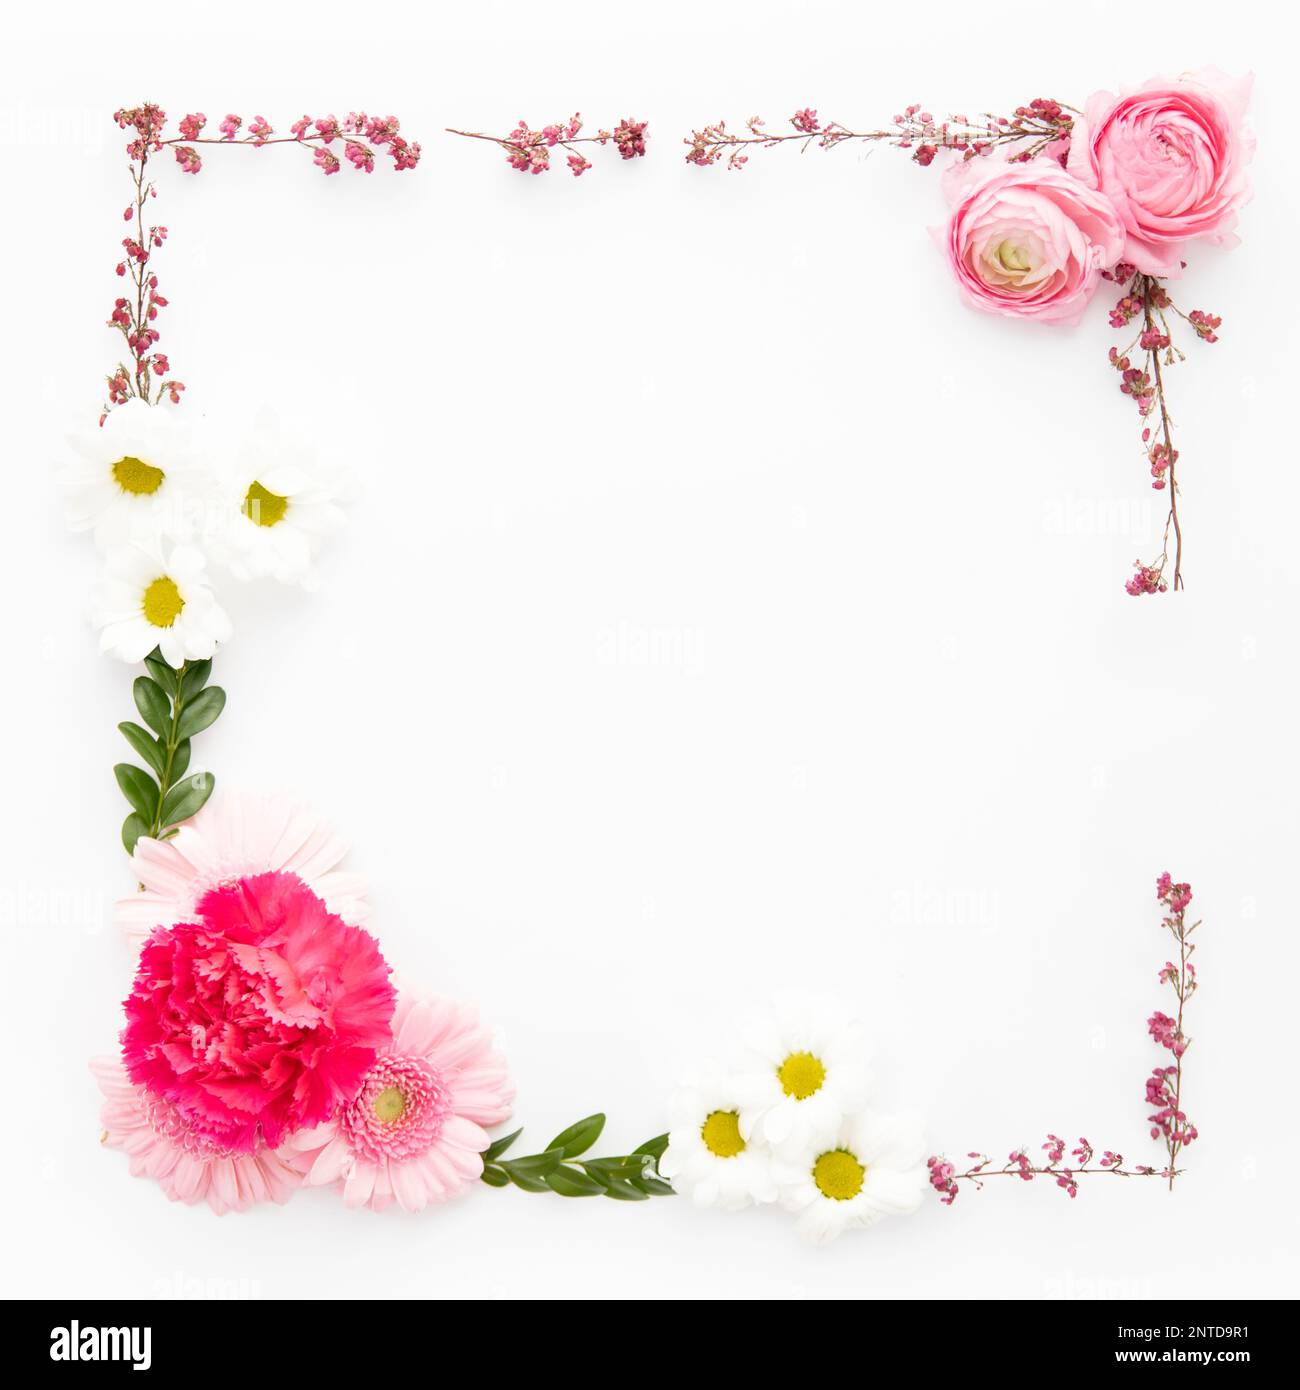 bordure de fleurs variées. Belle photo Banque D'Images